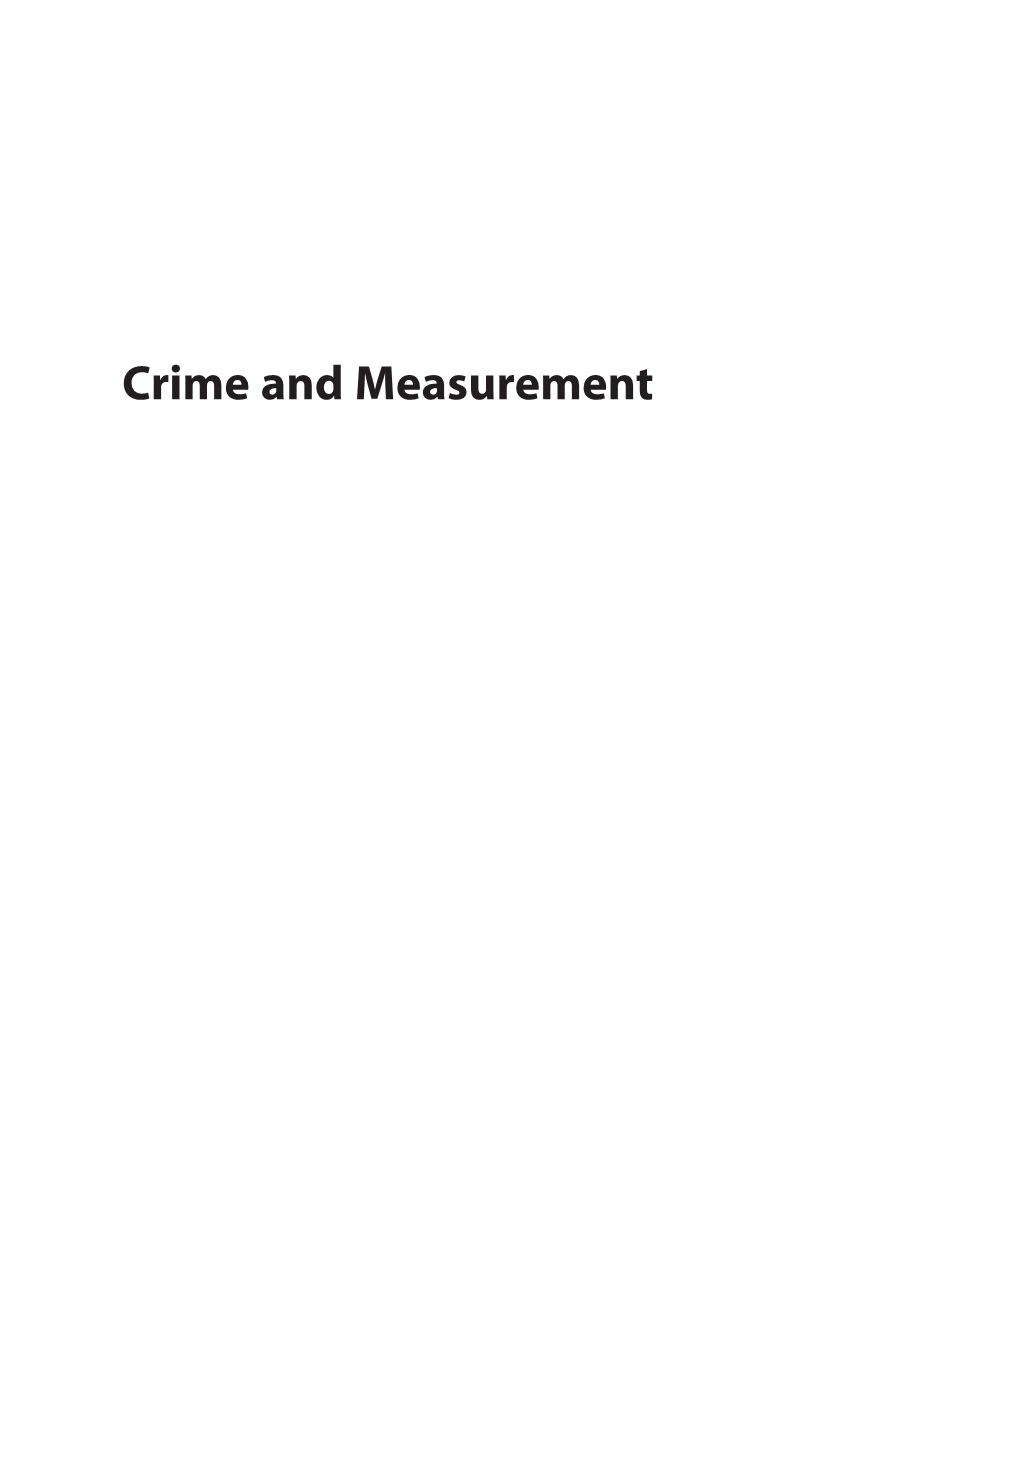 Crime and Measurement 00 Nafte Dalrymple 3E 2Pp 11/9/20 5:41 PM Page Ii 00 Nafte Dalrymple 3E 2Pp 11/9/20 5:41 PM Page Iii